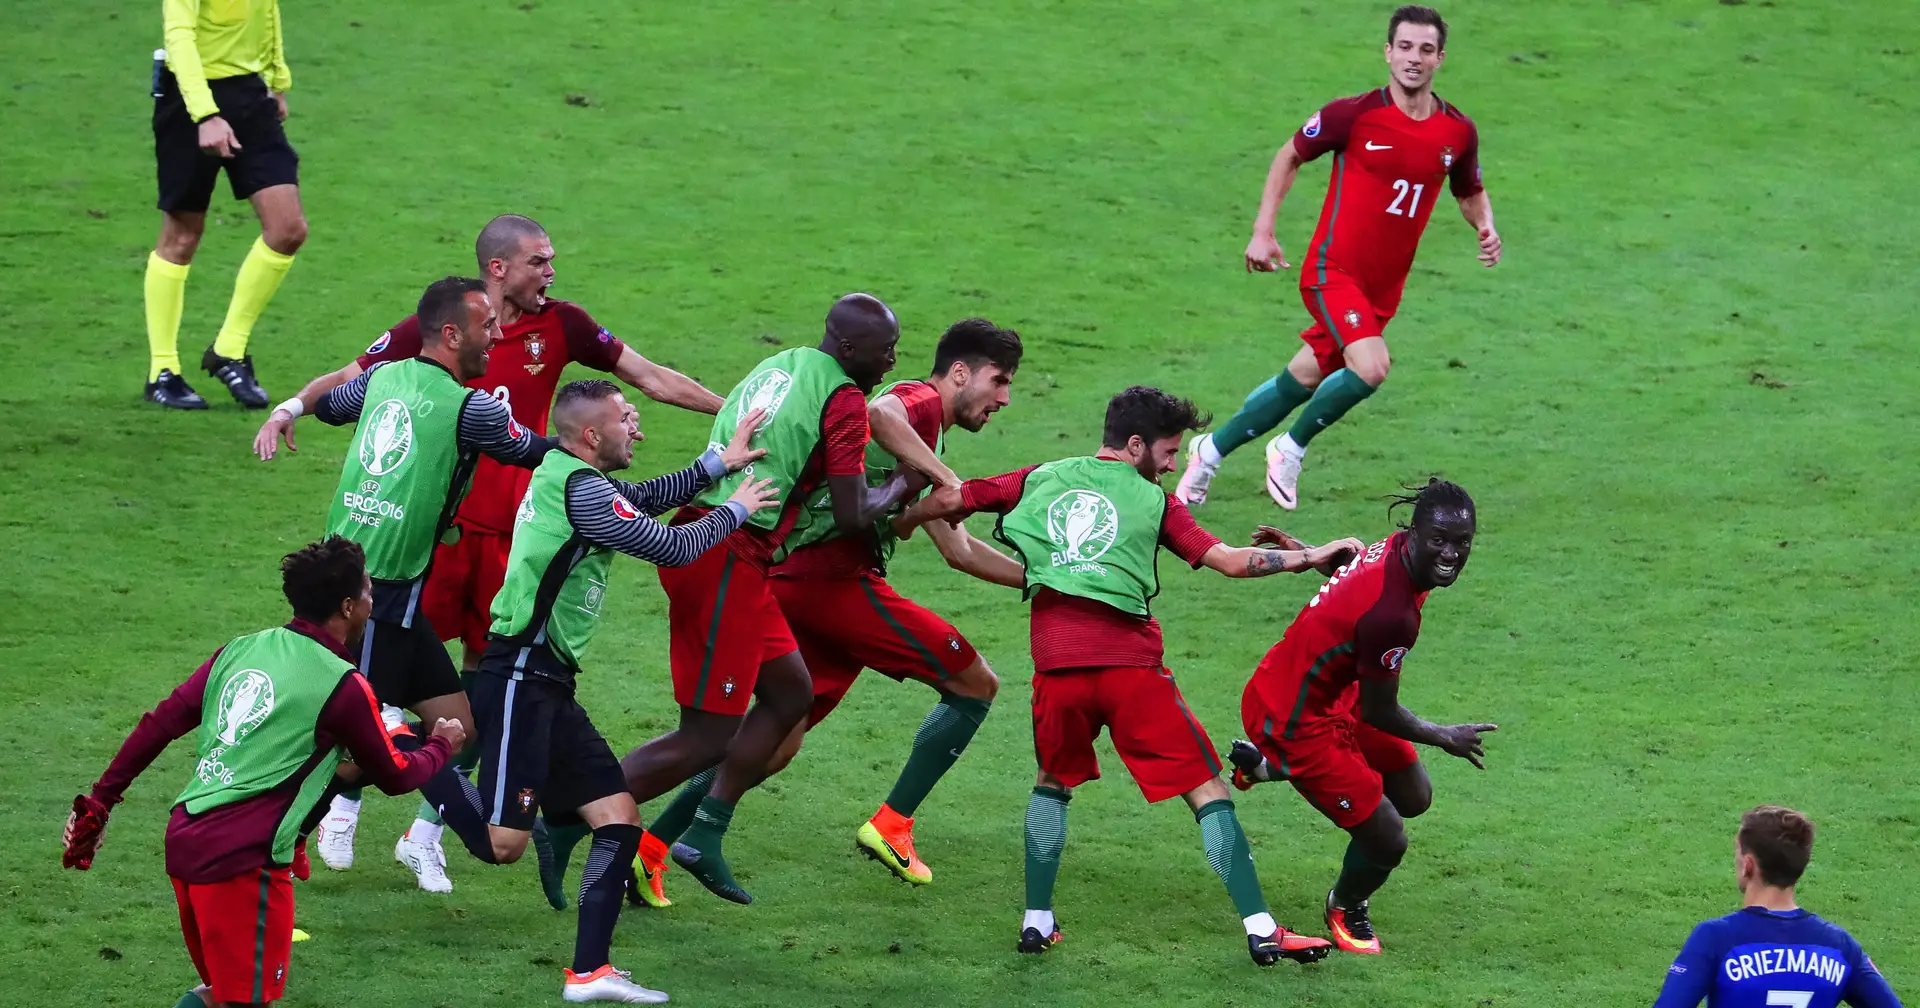 Gol e melhores momentos de Portugal x Espanha (0-1)